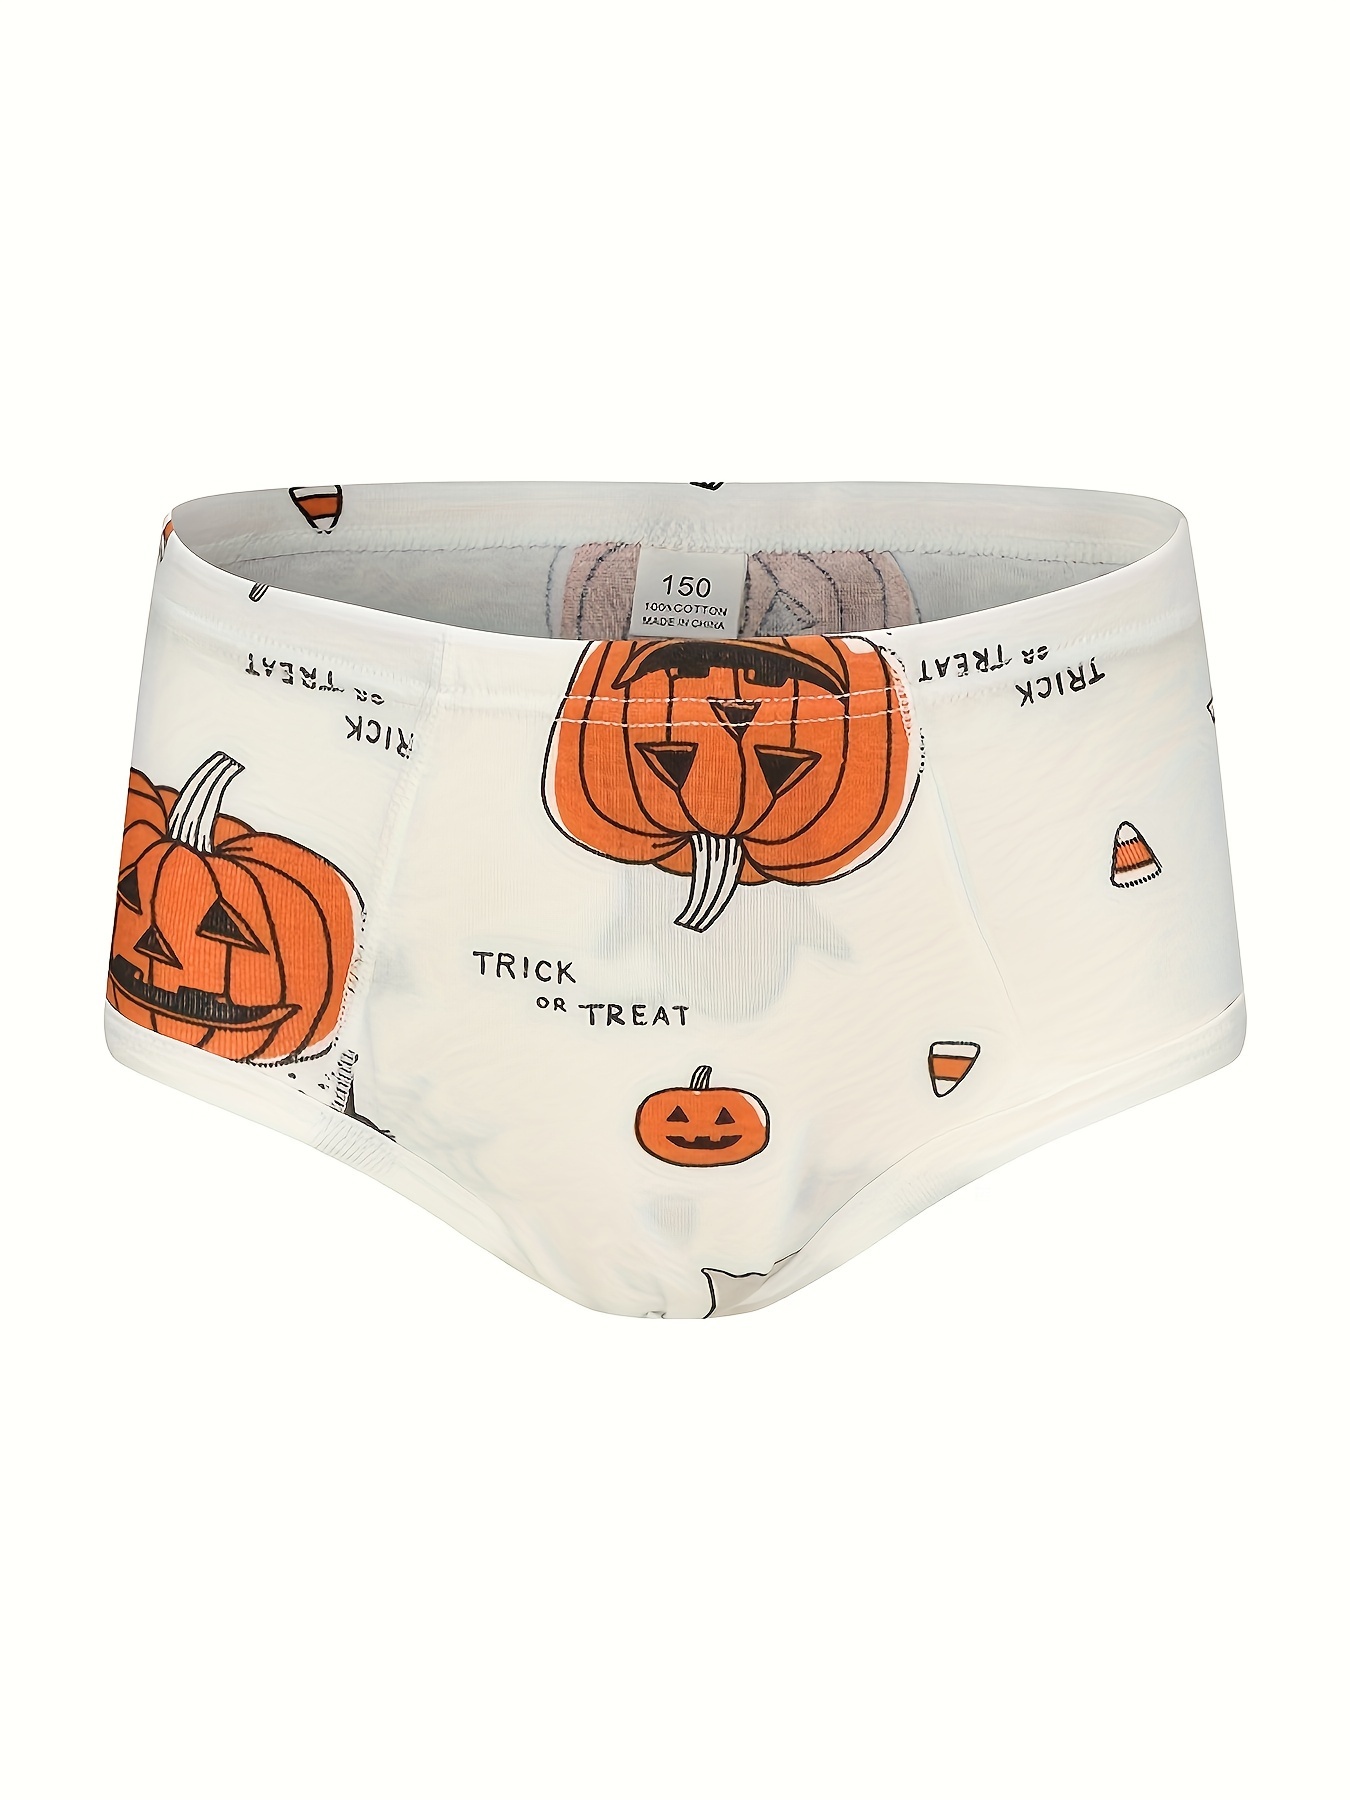 Jack-o'lantern Men's Briefs Underwear, Halloween Pumpkin Undies